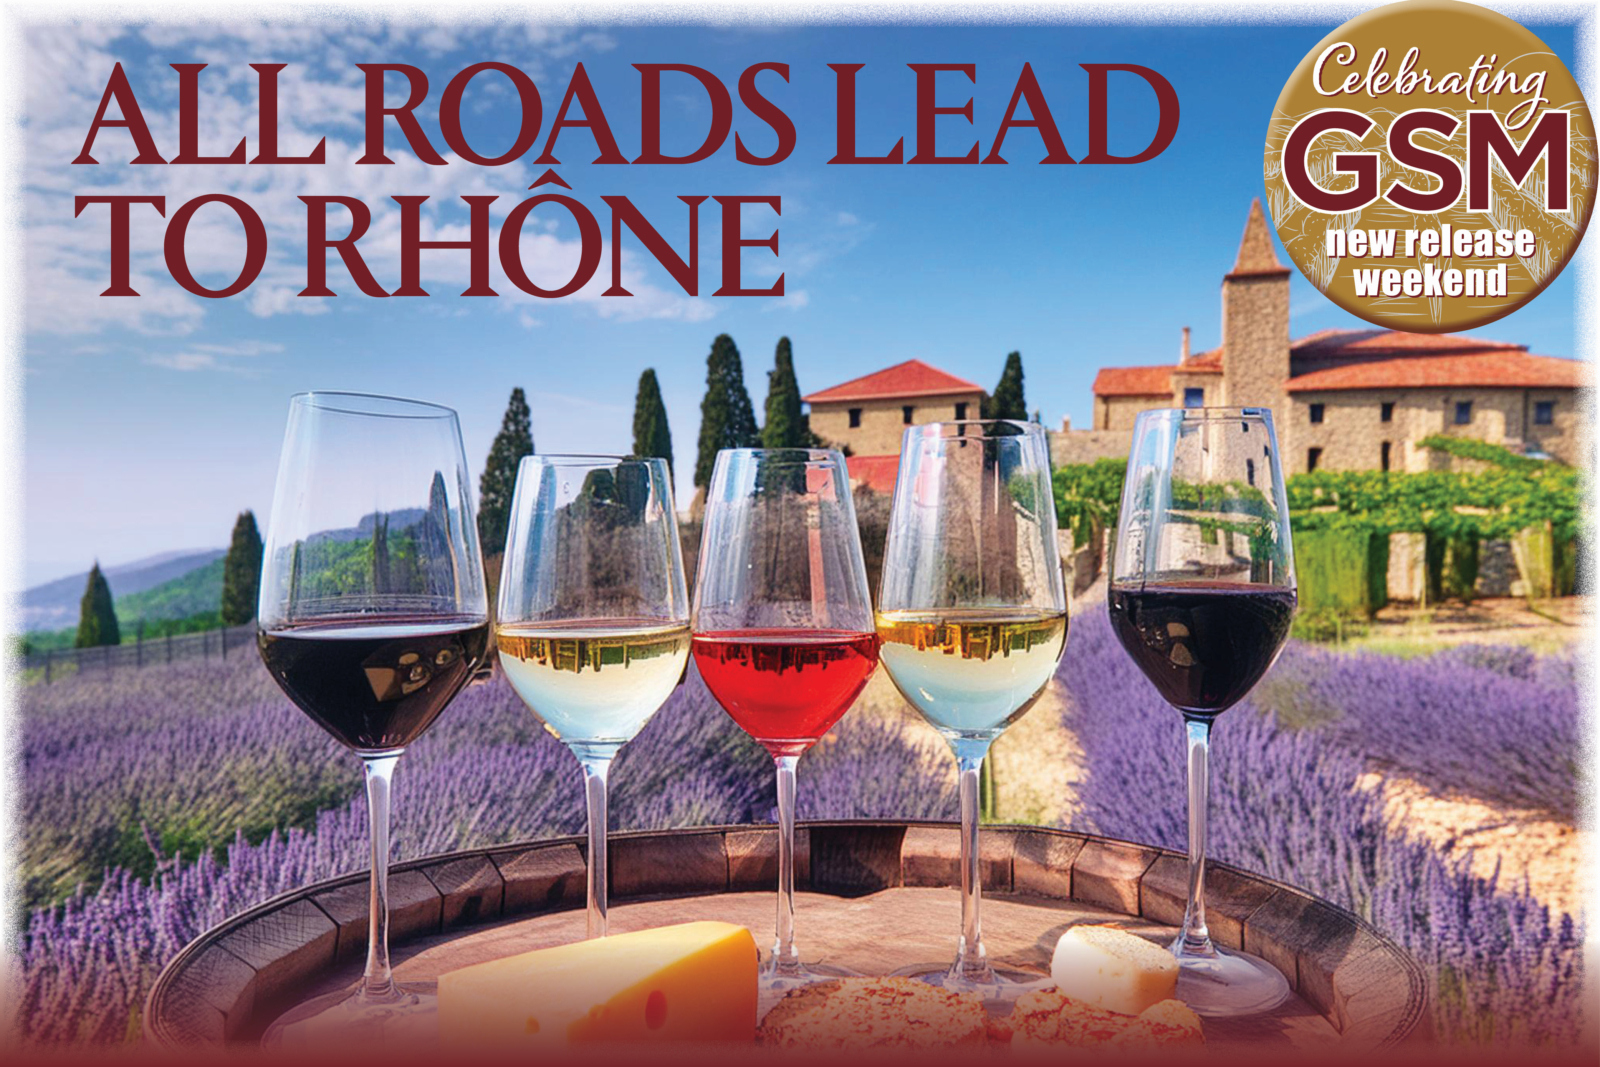 All roads lead to Rhone